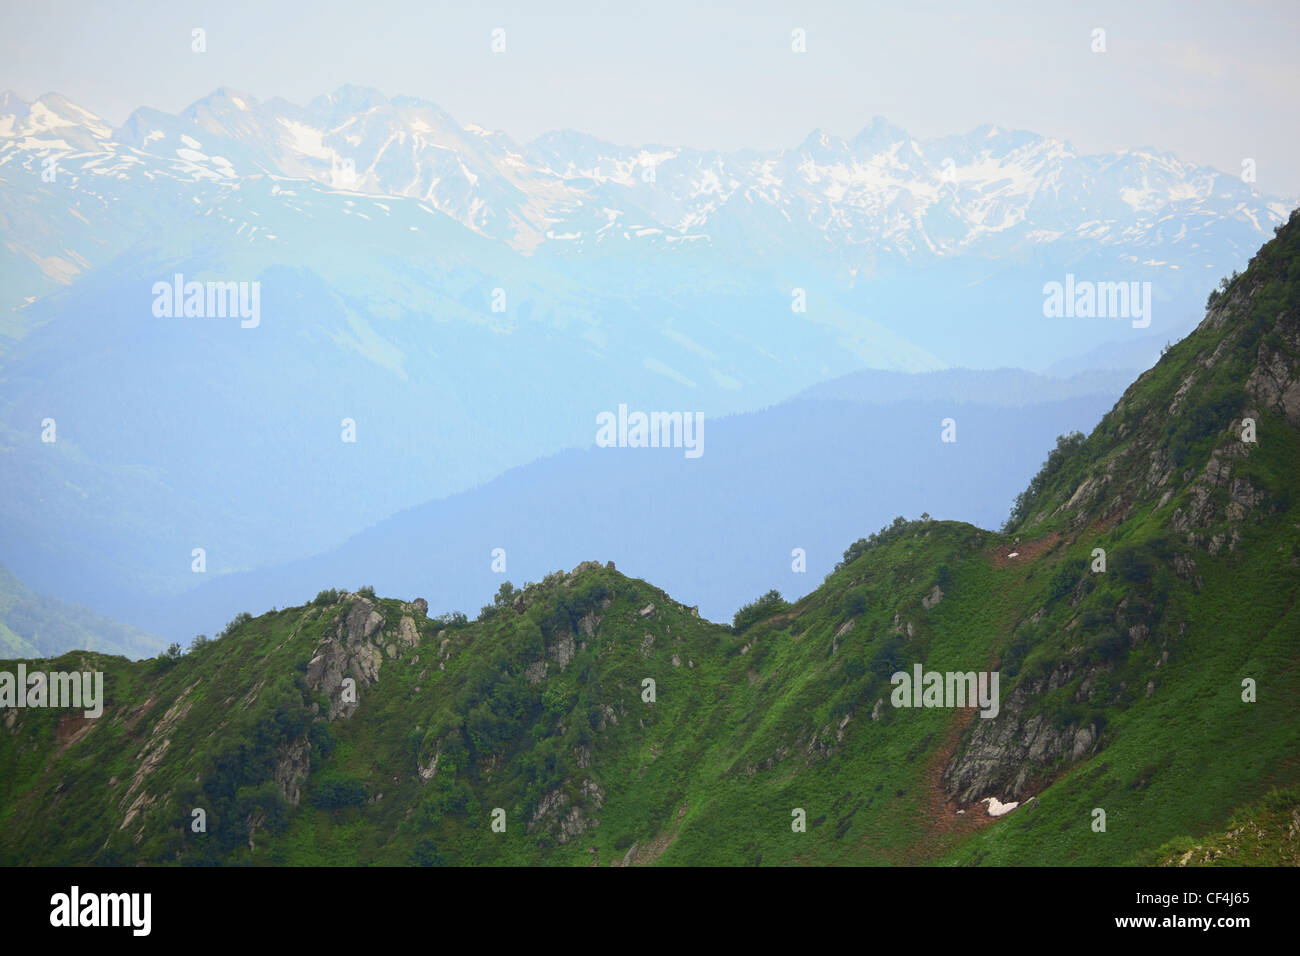 grüne Hügel. Berge mit Schnee Kappen in der Ferne. Stockfoto